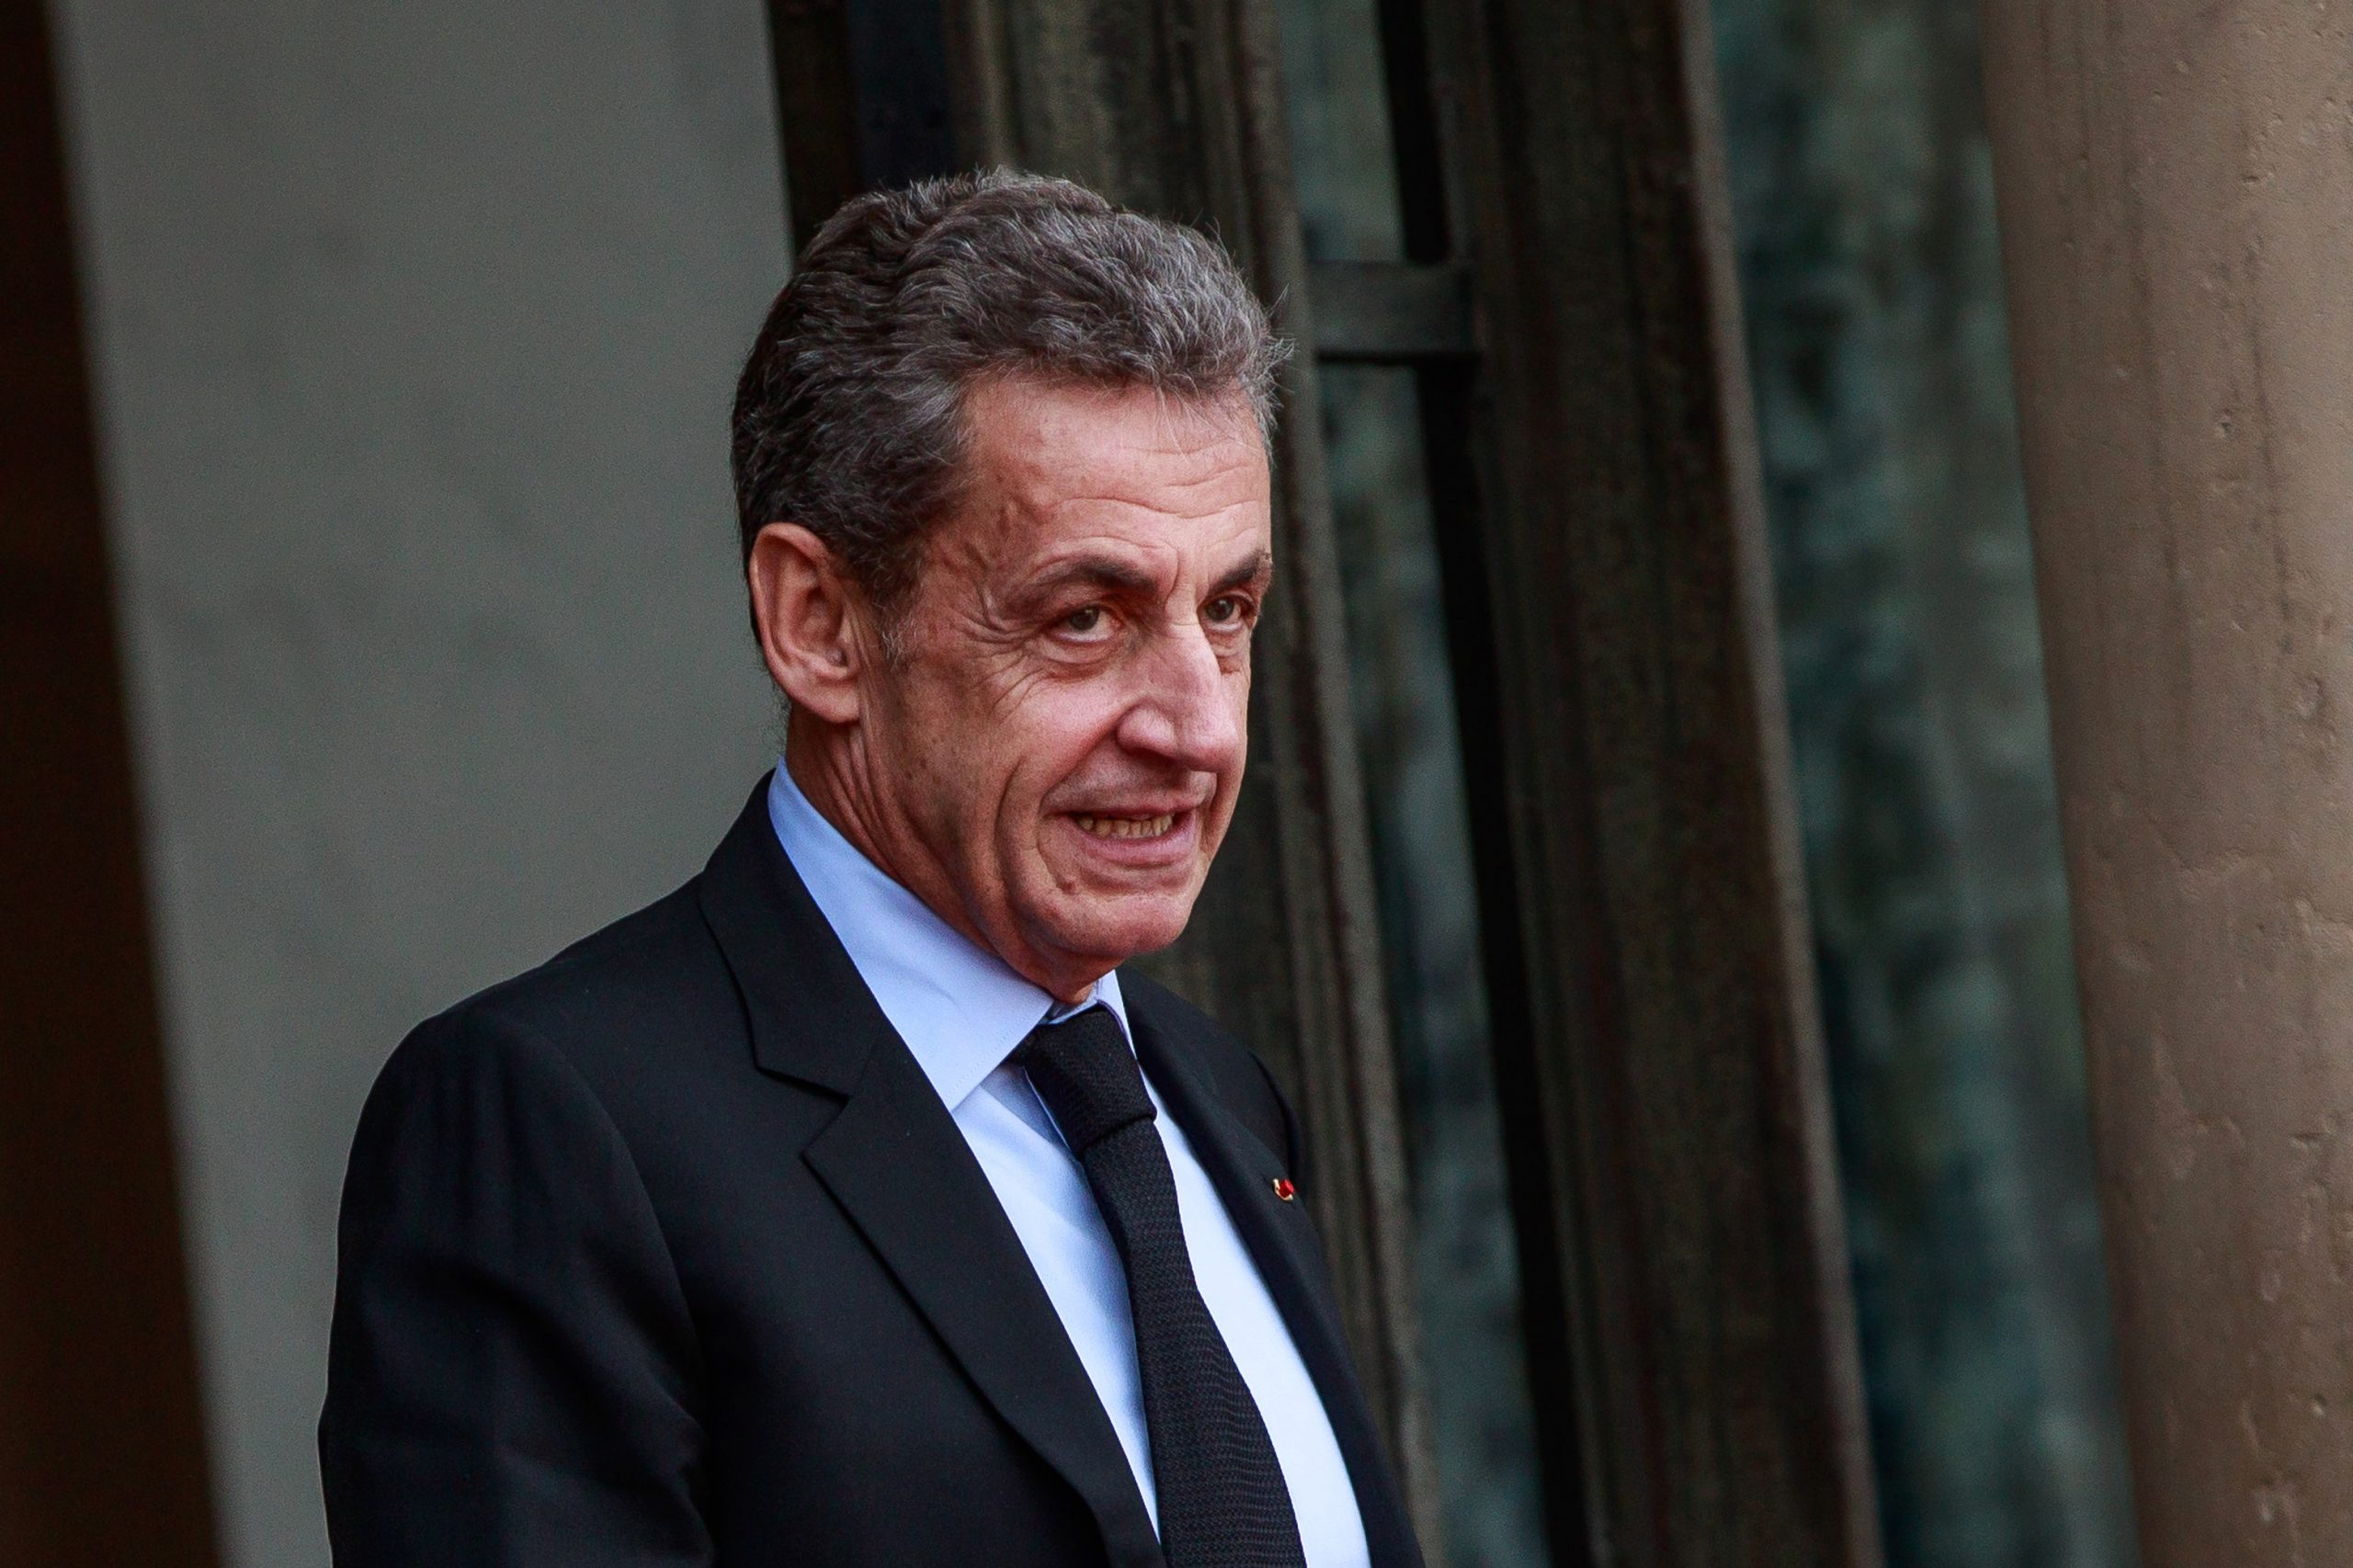 Nikola Sarkozi Nicolas Sarkozy